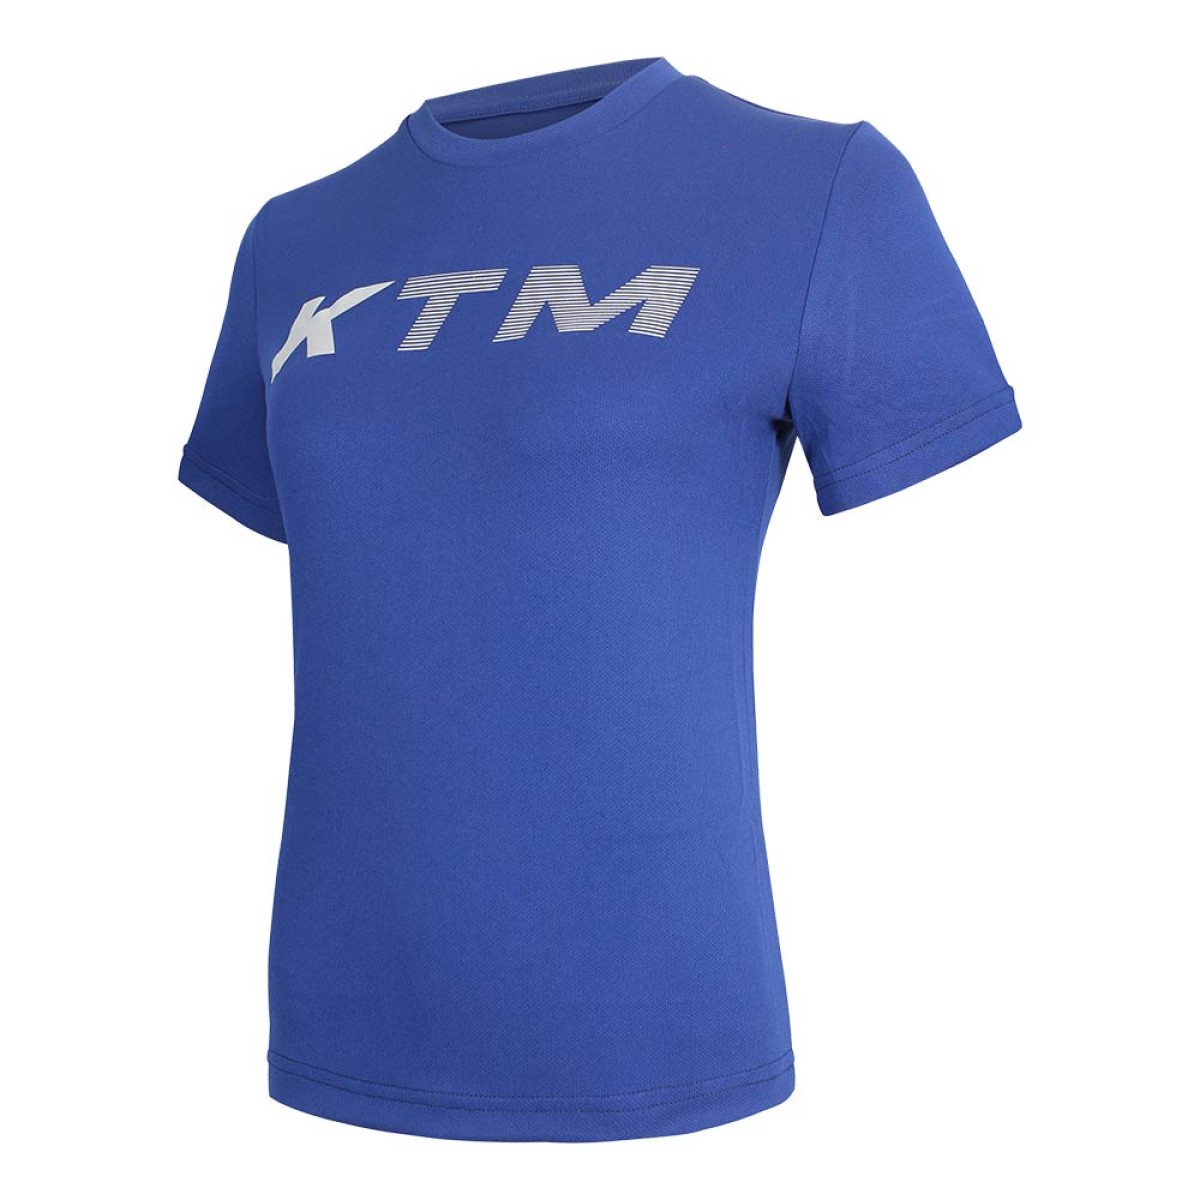 womens-t-shirt-krnt26205